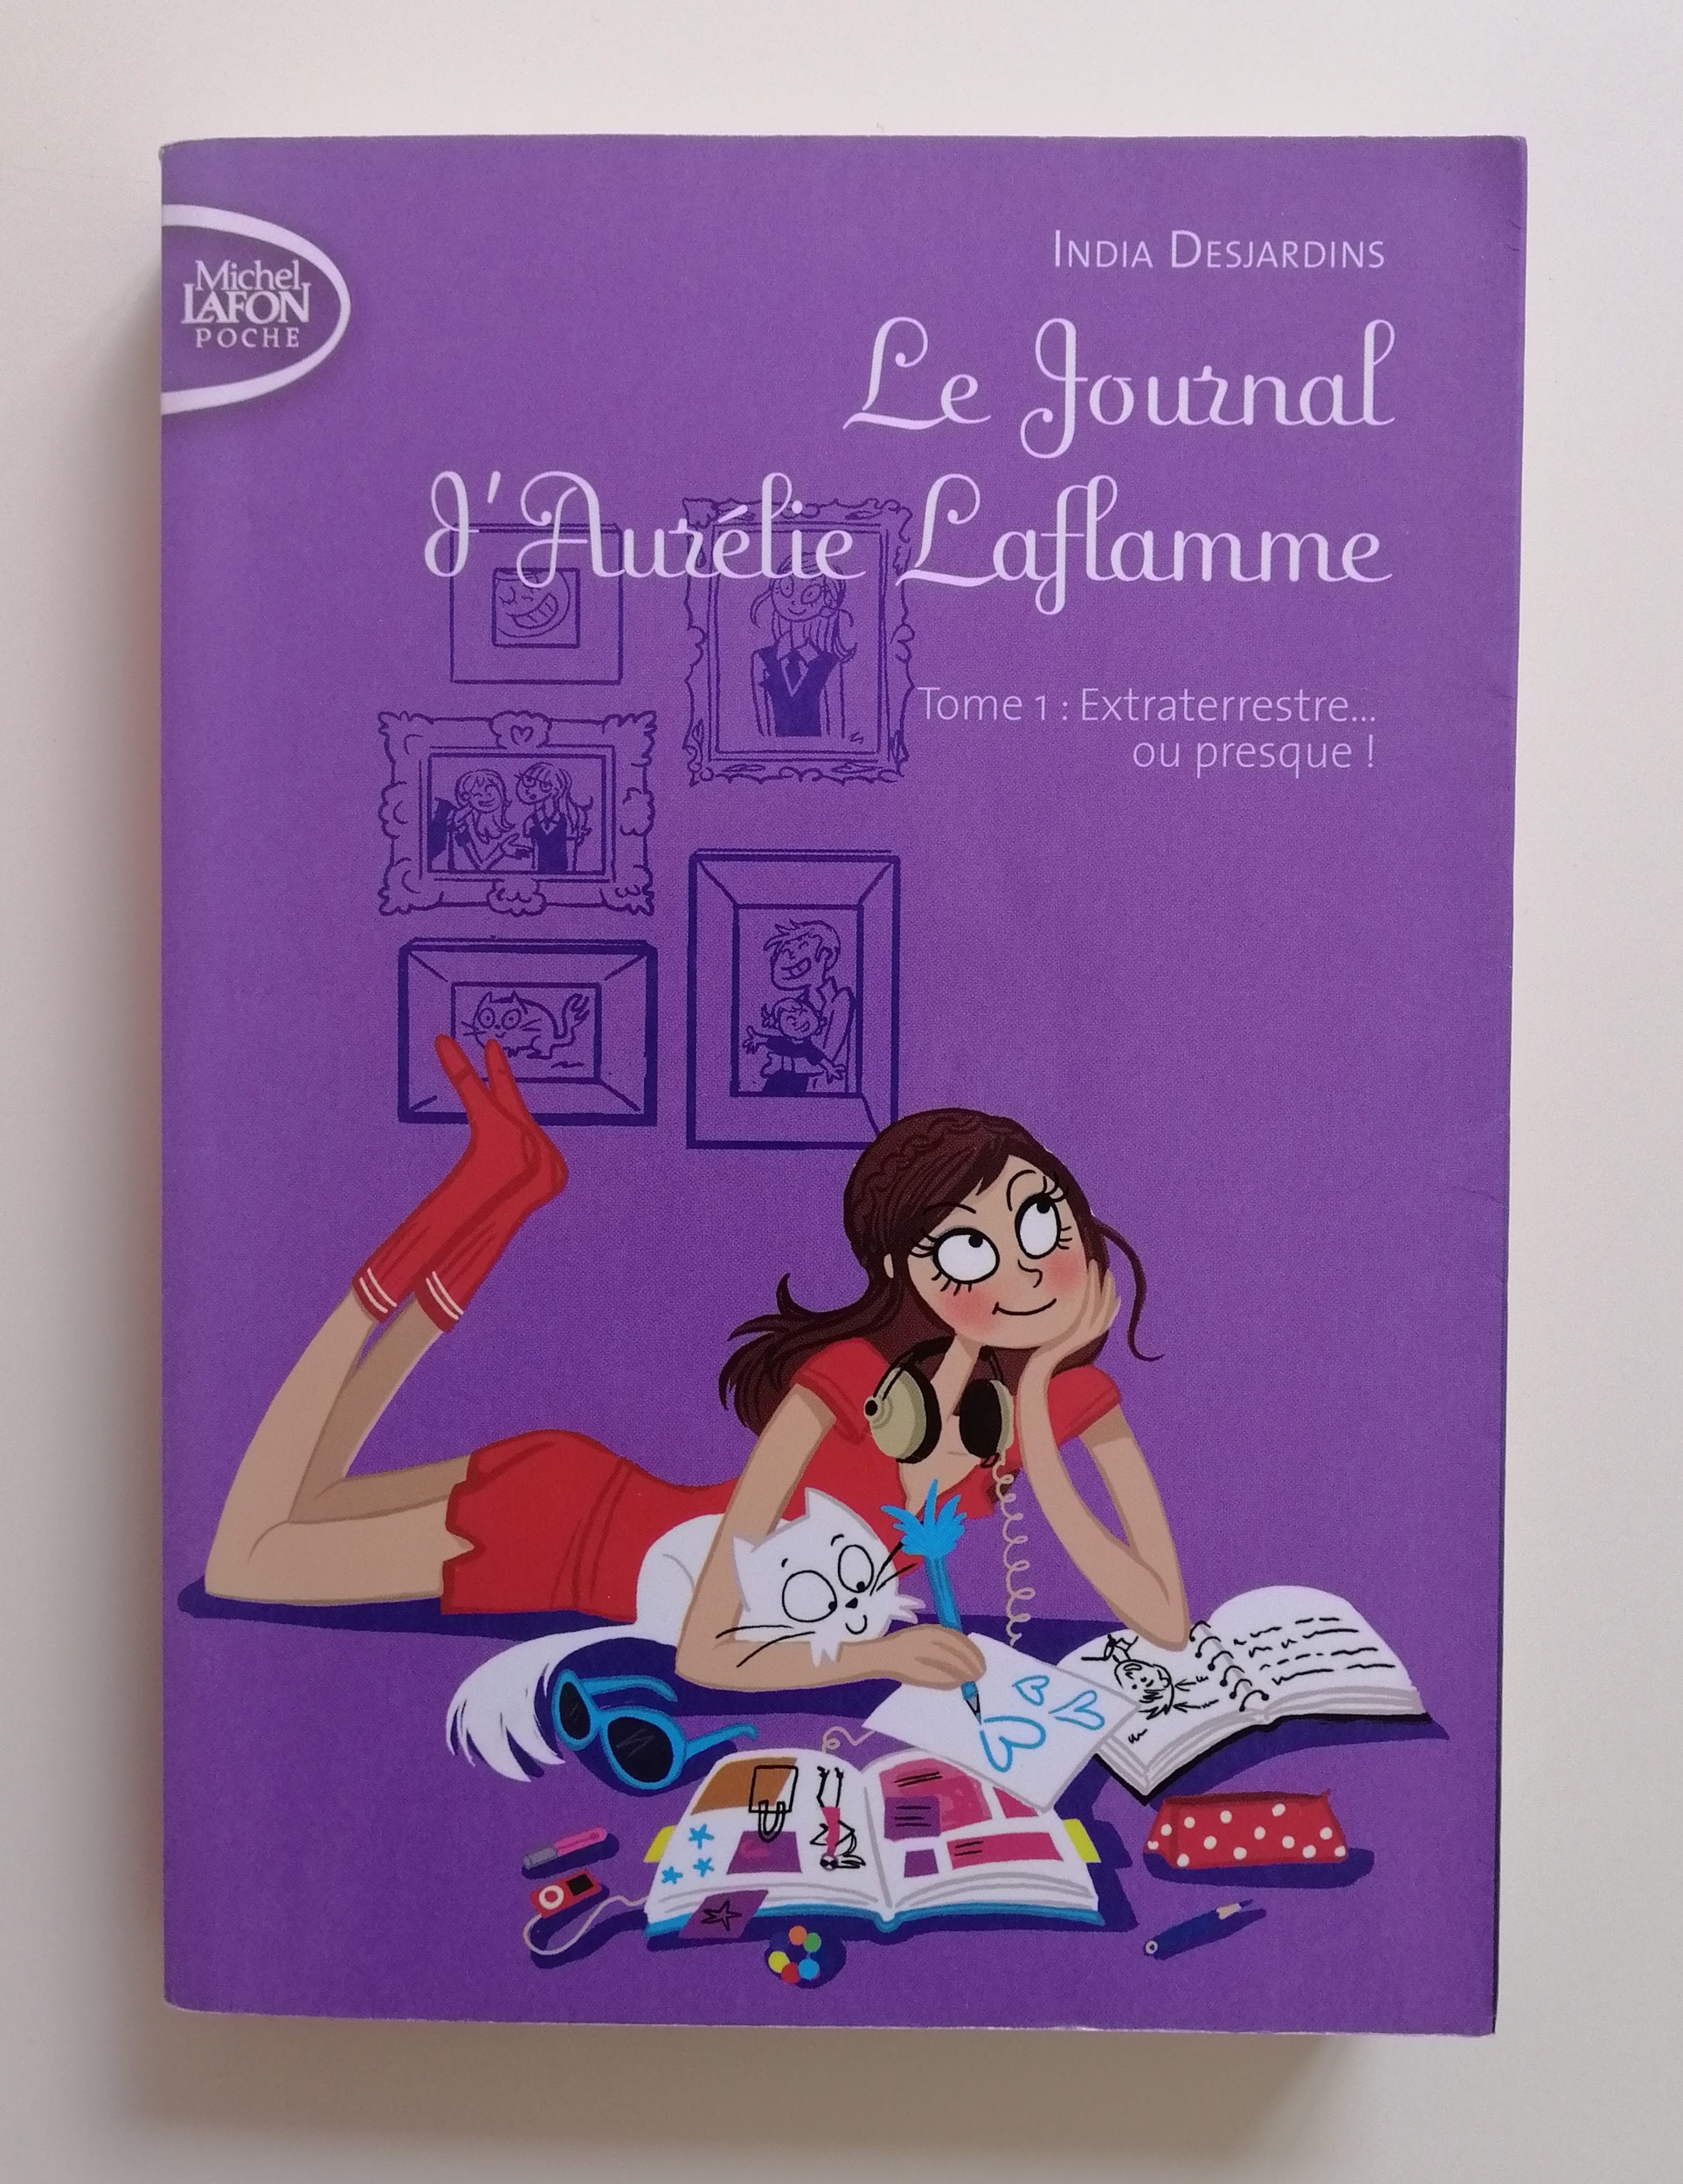 Le journal d'Aurélie Laflamme - Extraterrestre... ou presque ! - India Desjardins - Livre poche - Little Book Addict - III